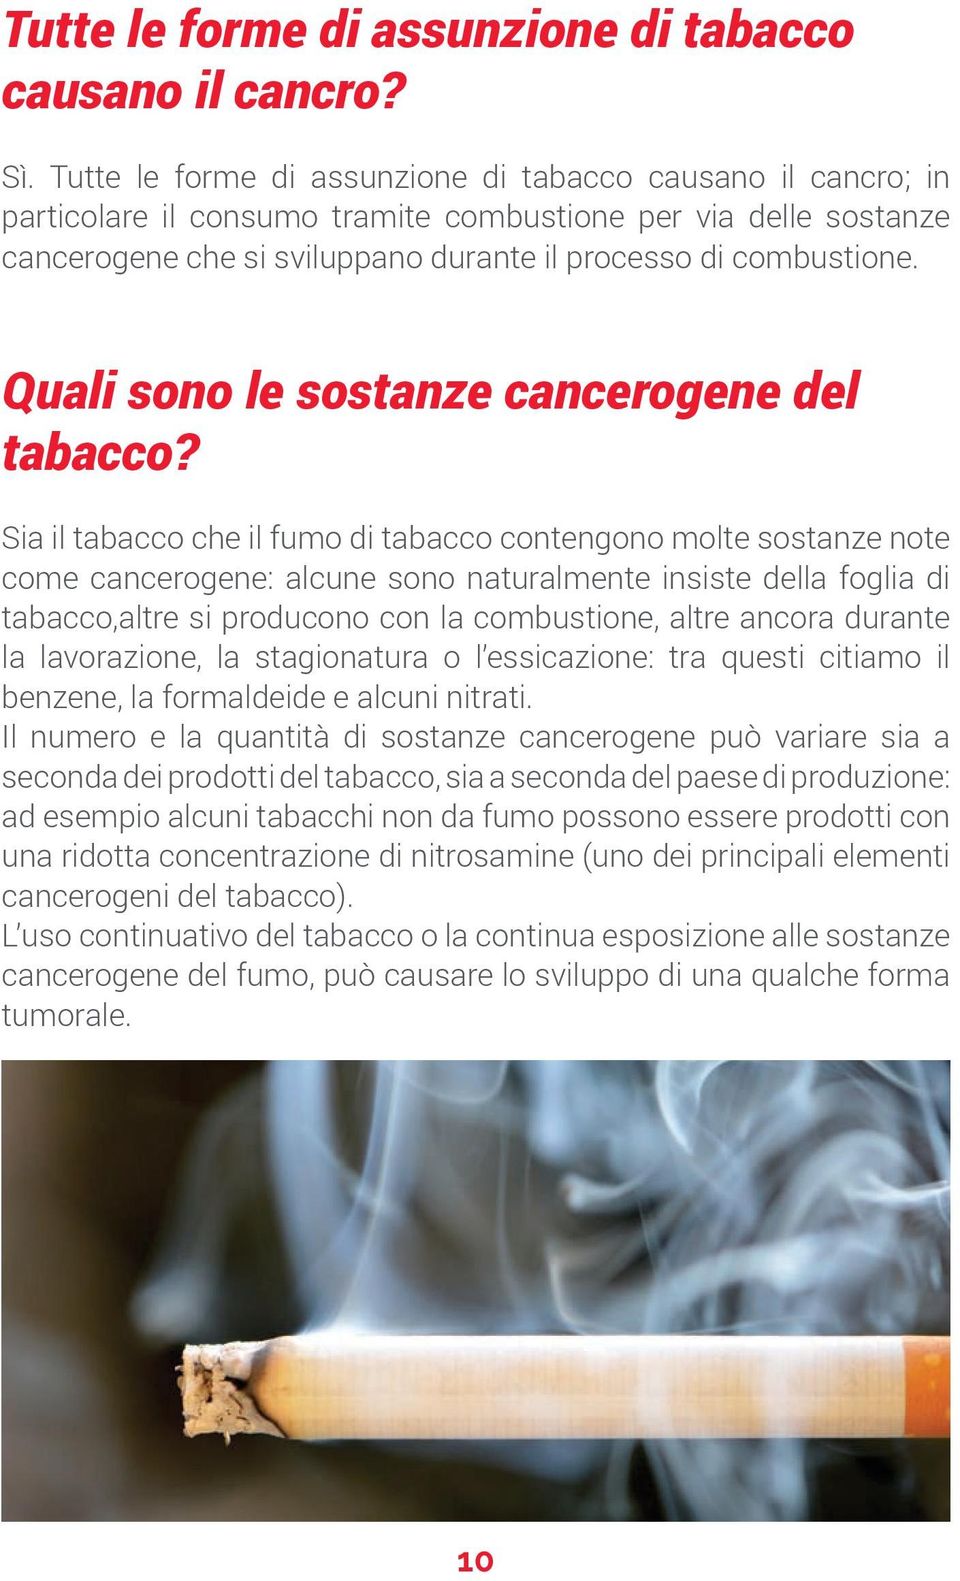 Quali sono le sostanze cancerogene del tabacco?